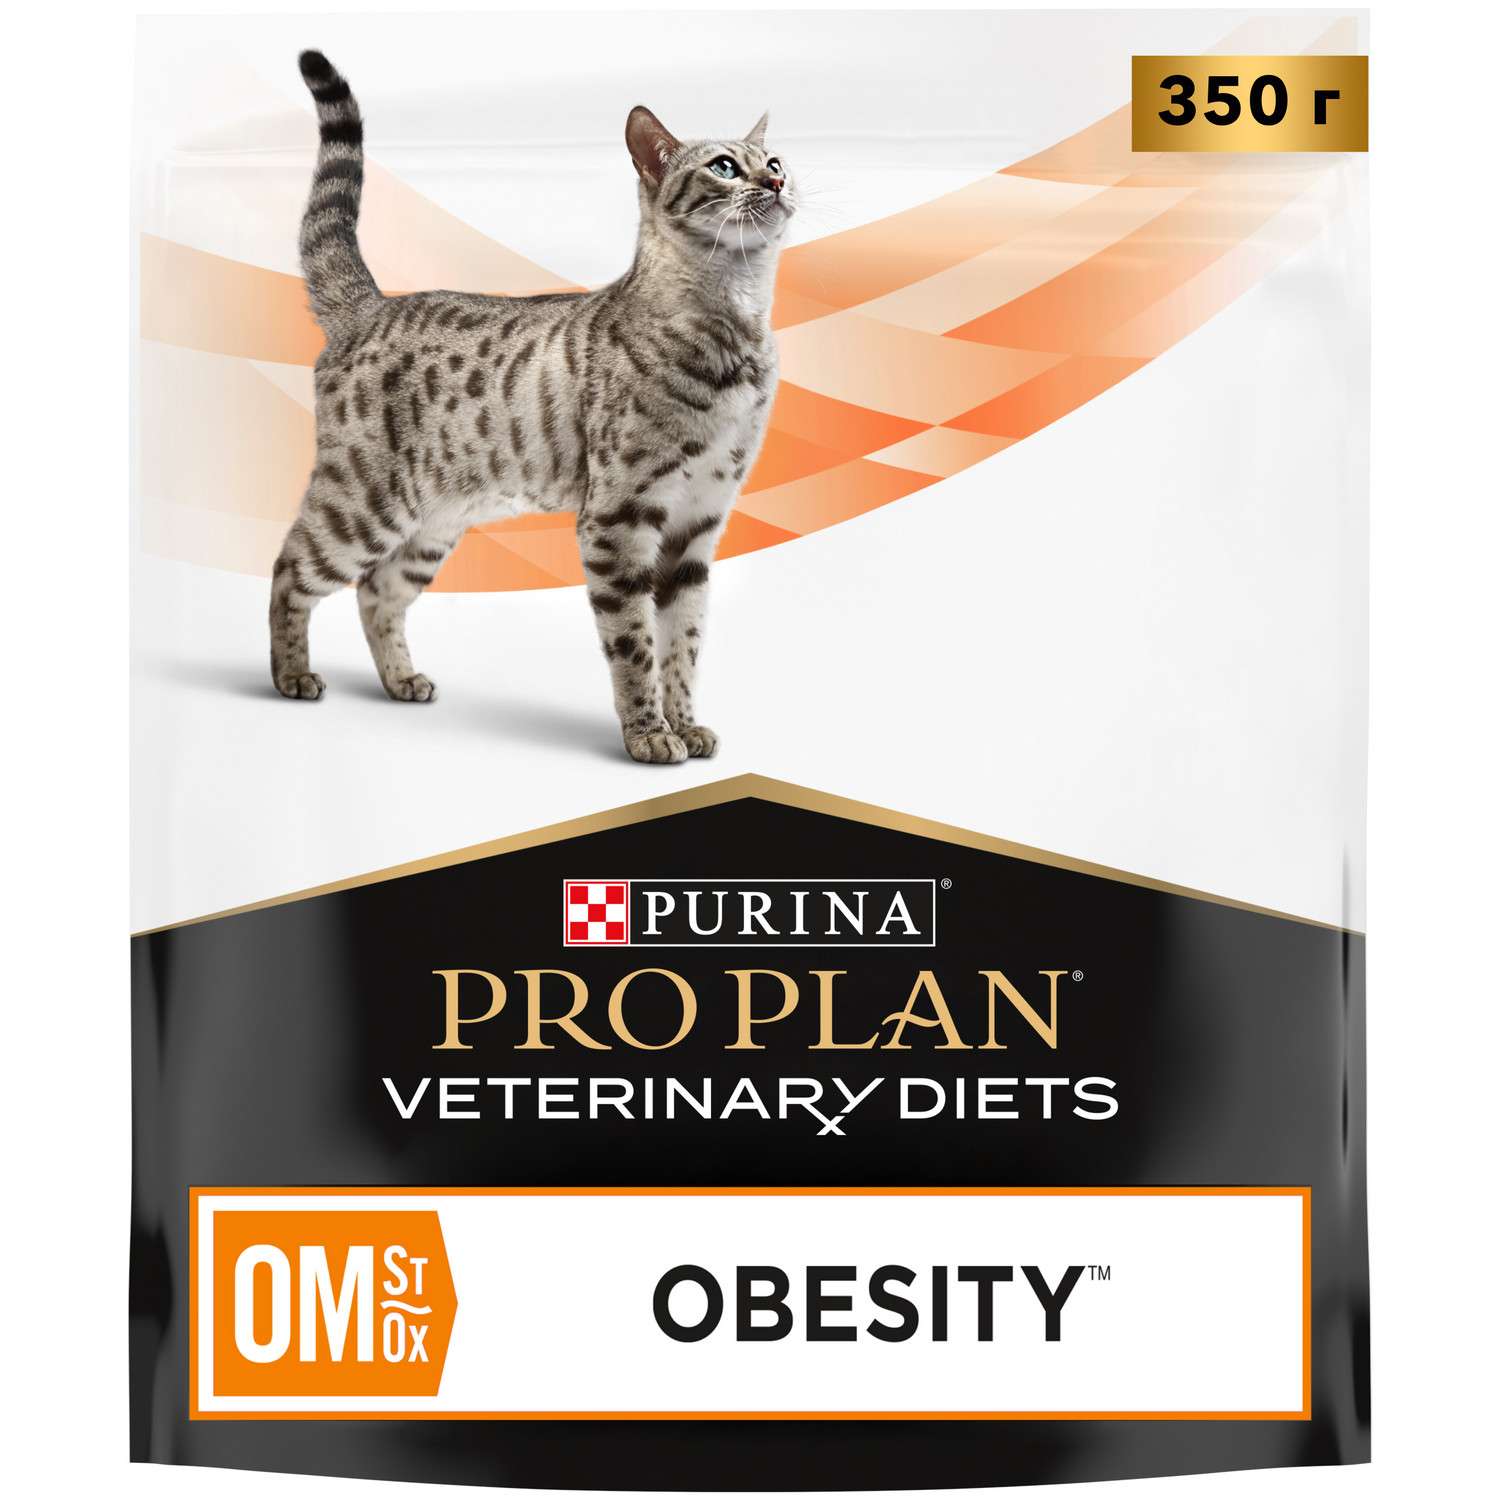 Корм для кошек Purina Pro Plan Veterinary diets OM St/Ox Obesity Mangement для снижения избыточной массы тела сухой 350г - фото 1